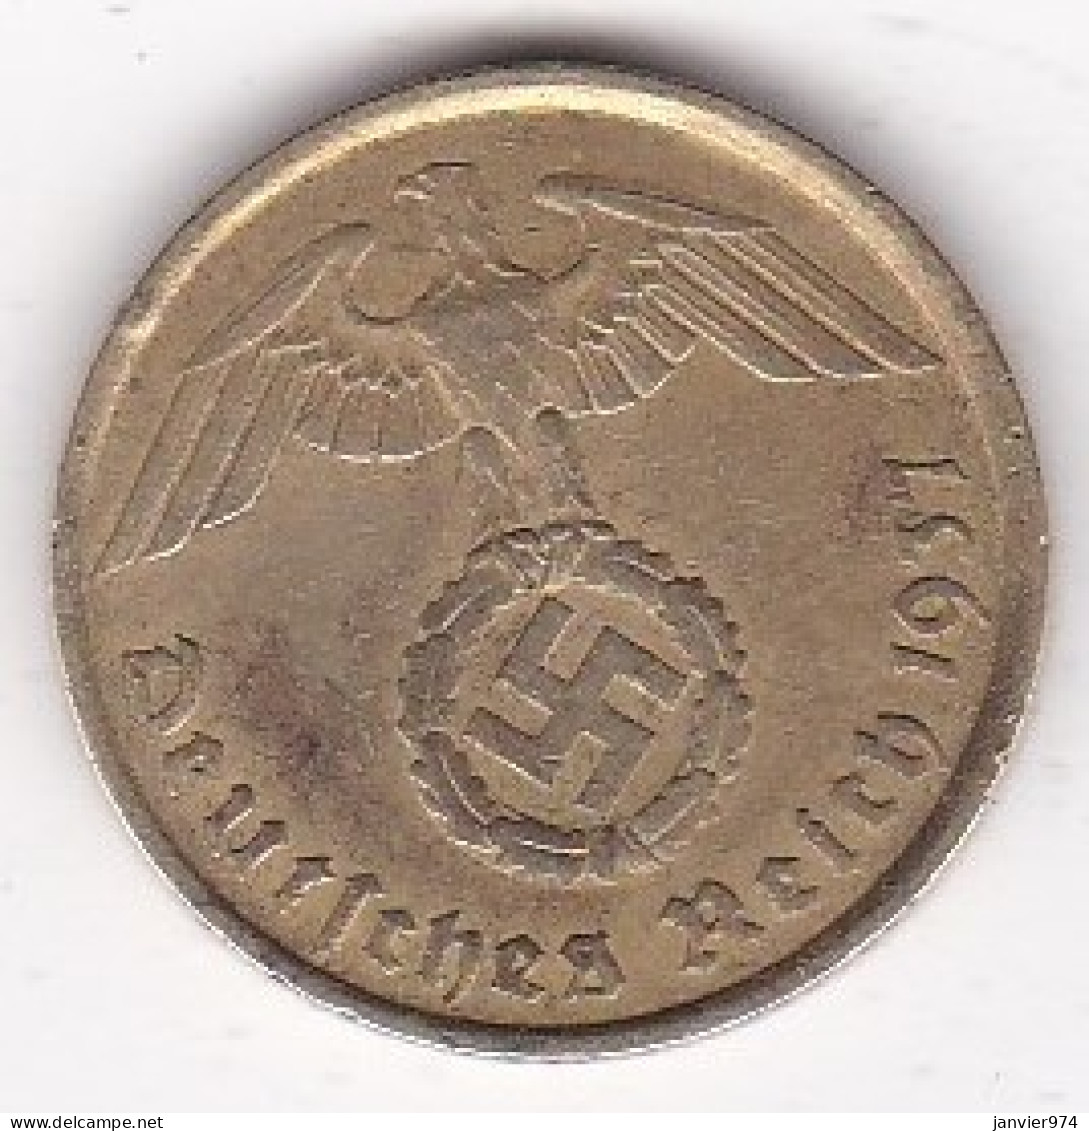 10 Reichspfennig 1937 A Berlin. Bronze-aluminium - 10 Reichspfennig